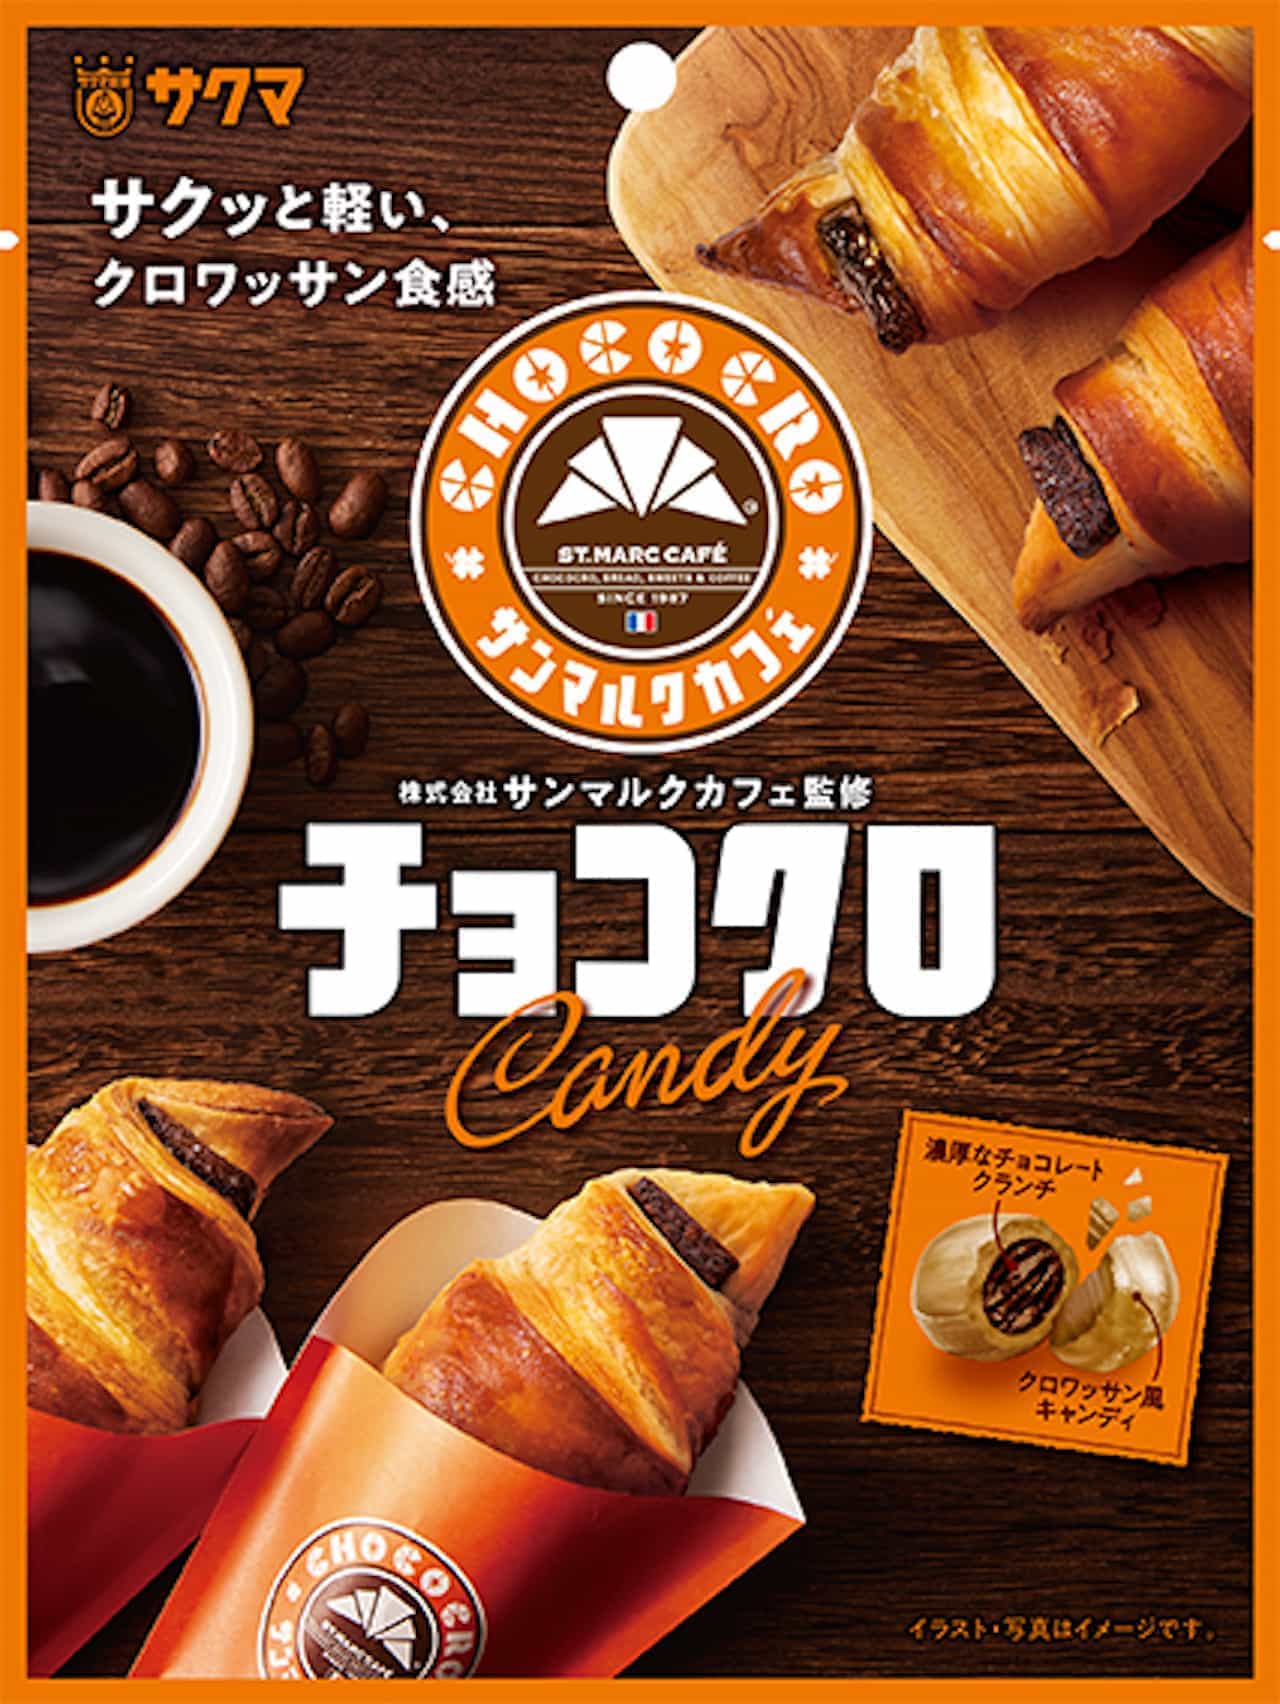 「チョコクロキャンディ」サンマルクカフェ×サクマ製菓